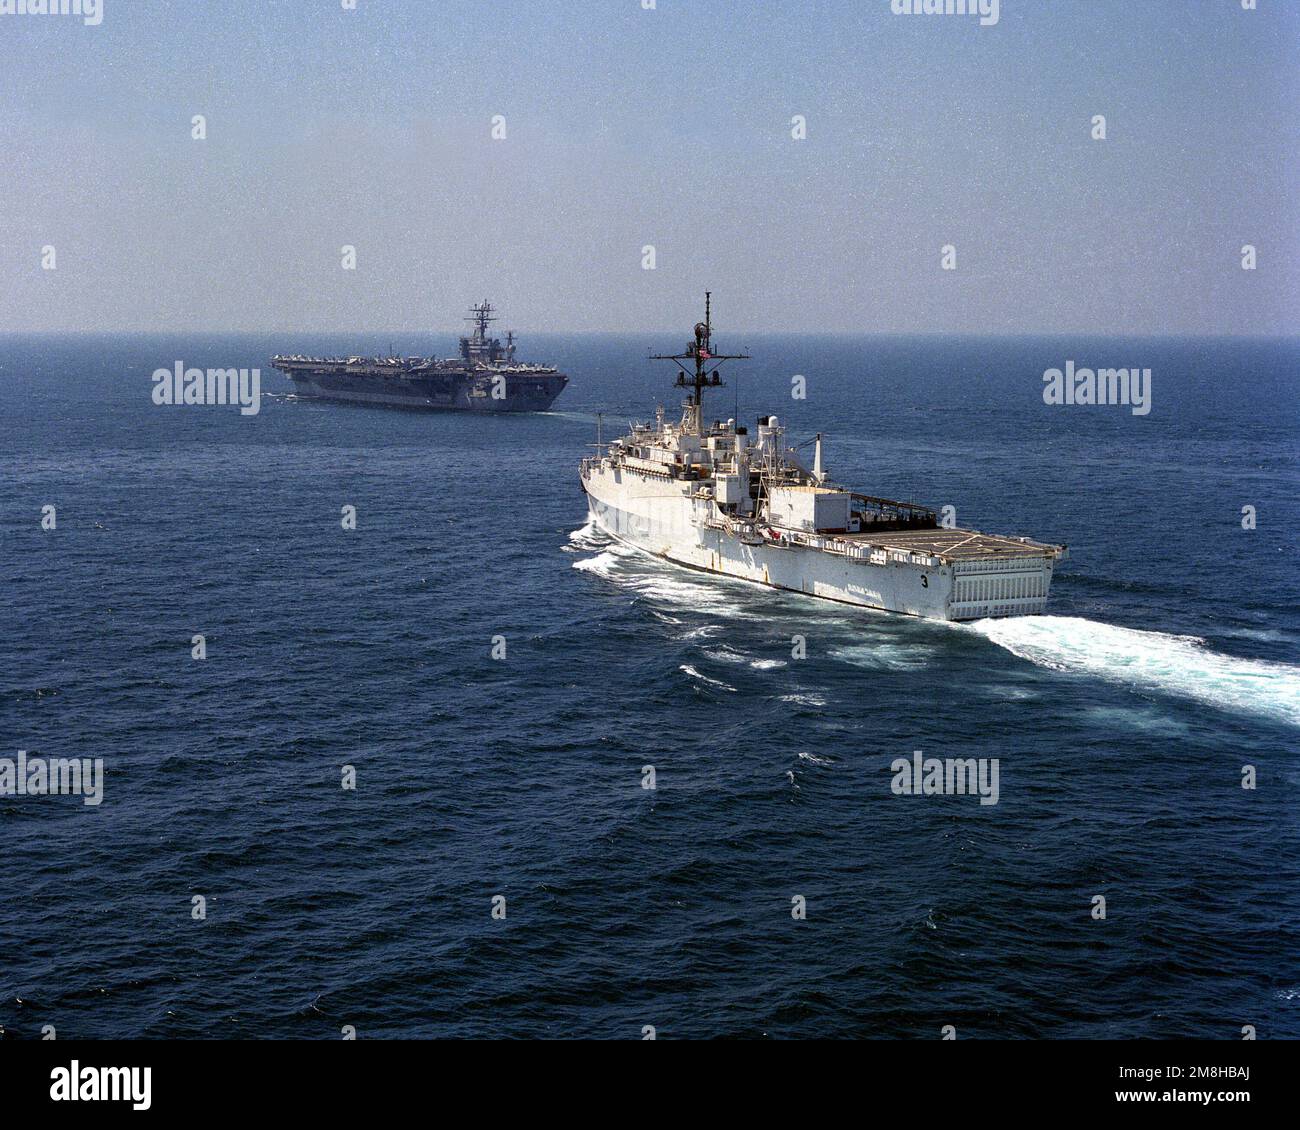 Vue du quartier portuaire du navire amiral divers USS LA SALLE (AFG-3) à l'approche du porte-avions à propulsion nucléaire USS NIMITZ (CVN-68) pendant l'opération Southern Watch. Sujet opération/série: SUD PAYS DE VEILLE: Inconnu Banque D'Images